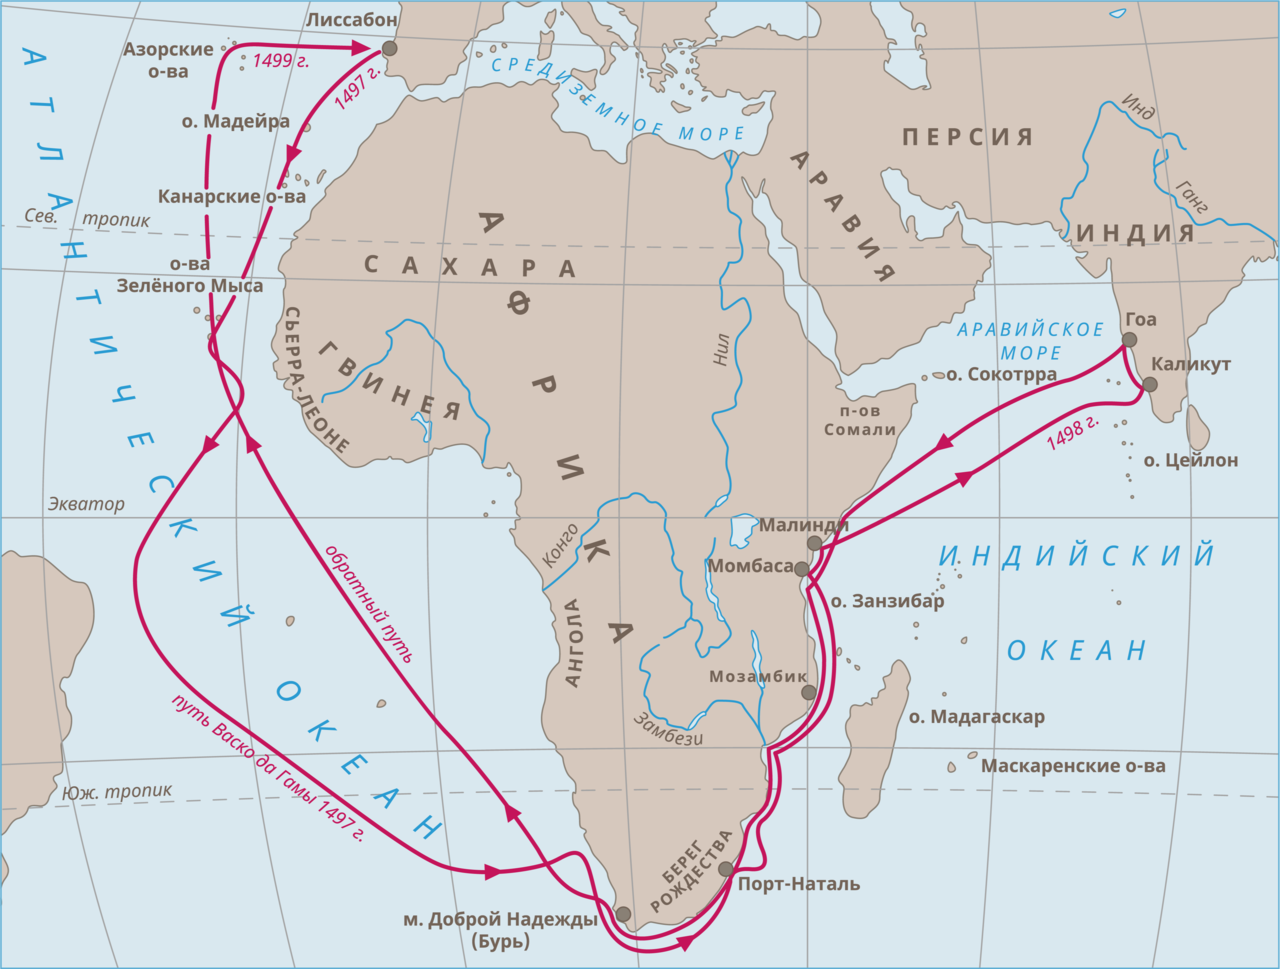 Первый морское путешествие вокруг африки. Путь экспедиции ВАСКО да Гама в Индию. Путь ВАСКО да Гама на карте в Индию. Первое путешествие ВАСКО да Гамы в Индию. Плавание ВАСКО да Гама в Индию.